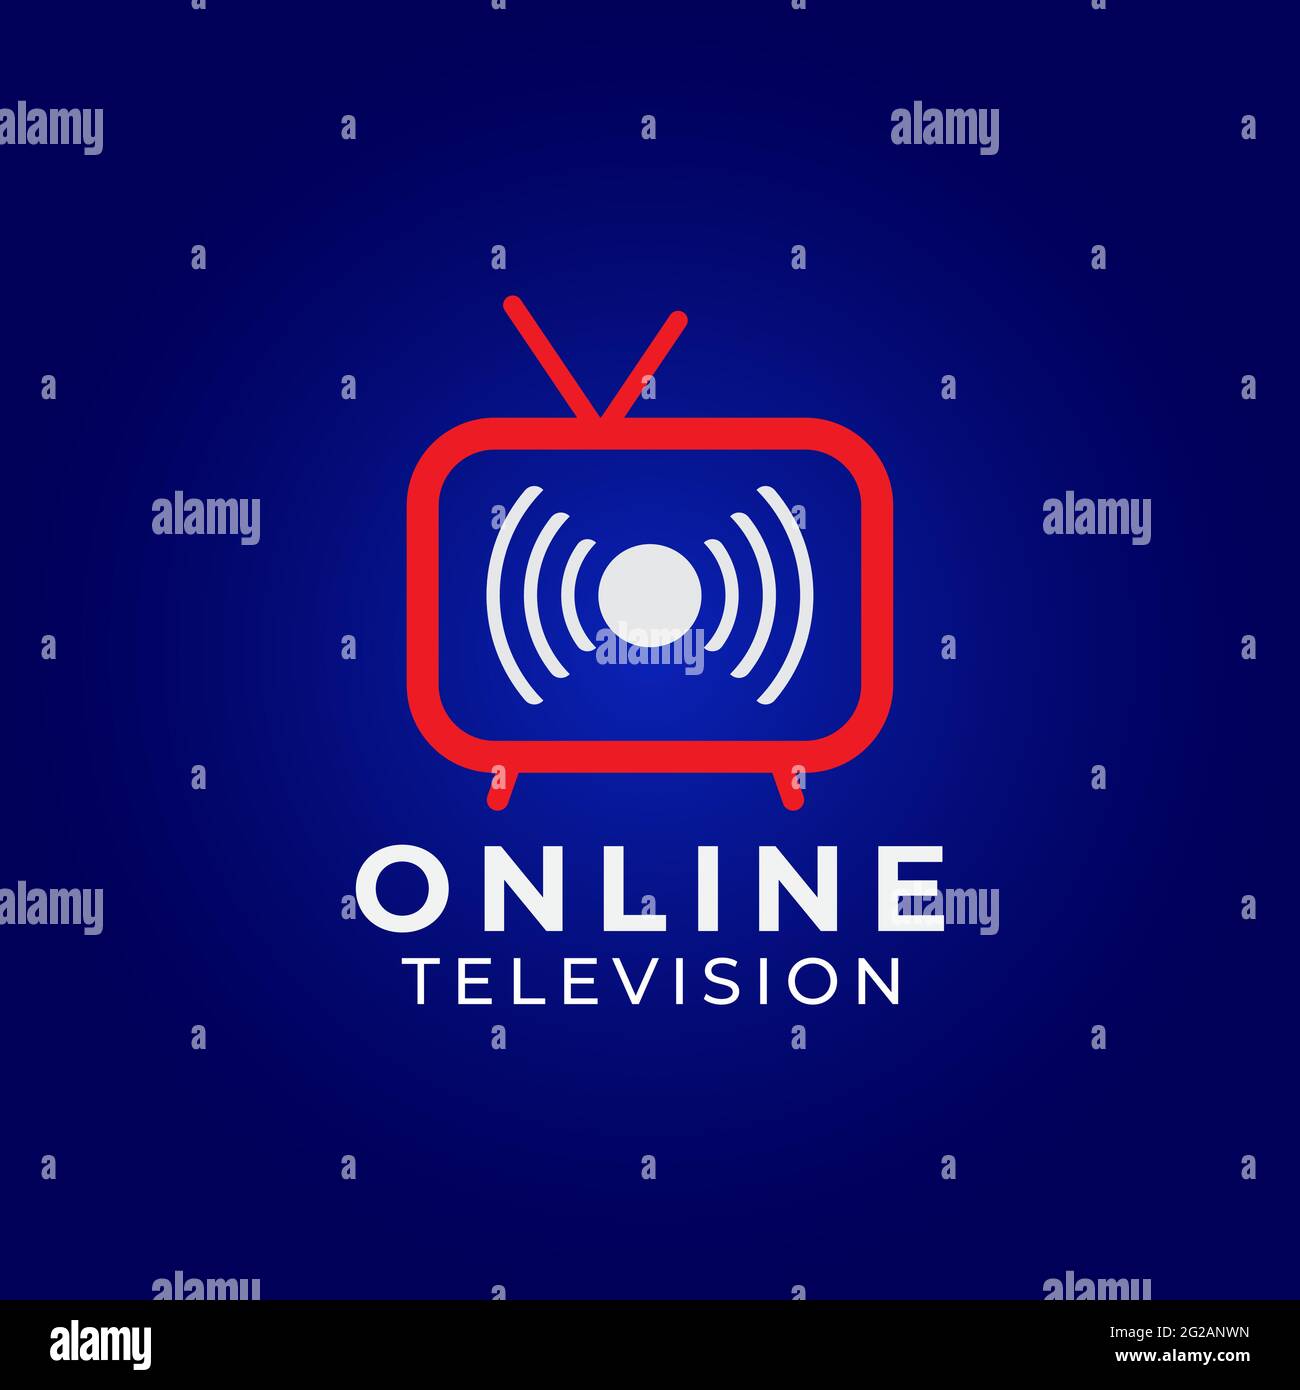 Emular champán Tendero Logotipo del canal de televisión en línea sobre fondo azul oscuro. Marcas  pictóricas Concepto de diseño de logotipos con icono de televisión y canales  en directo. ID de color rojo azul y